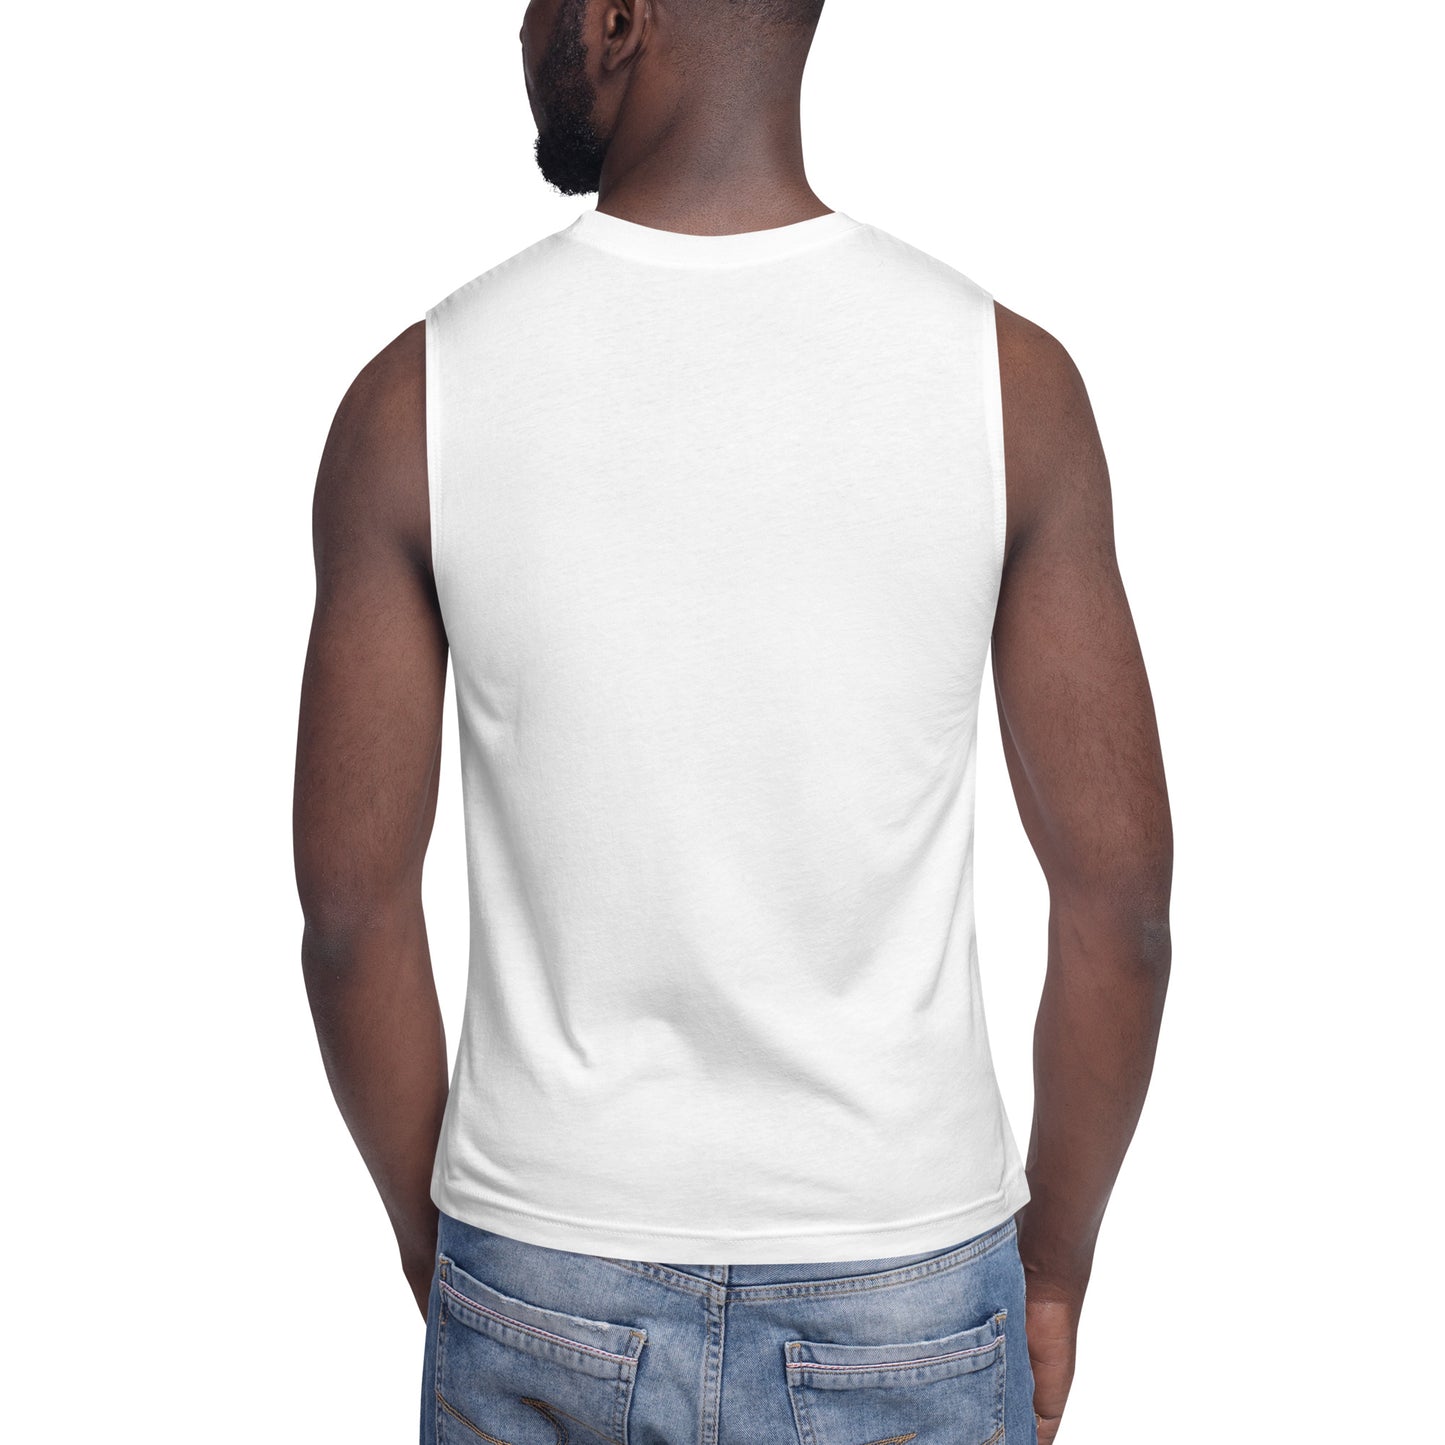 UNIQUE Muscle Shirt